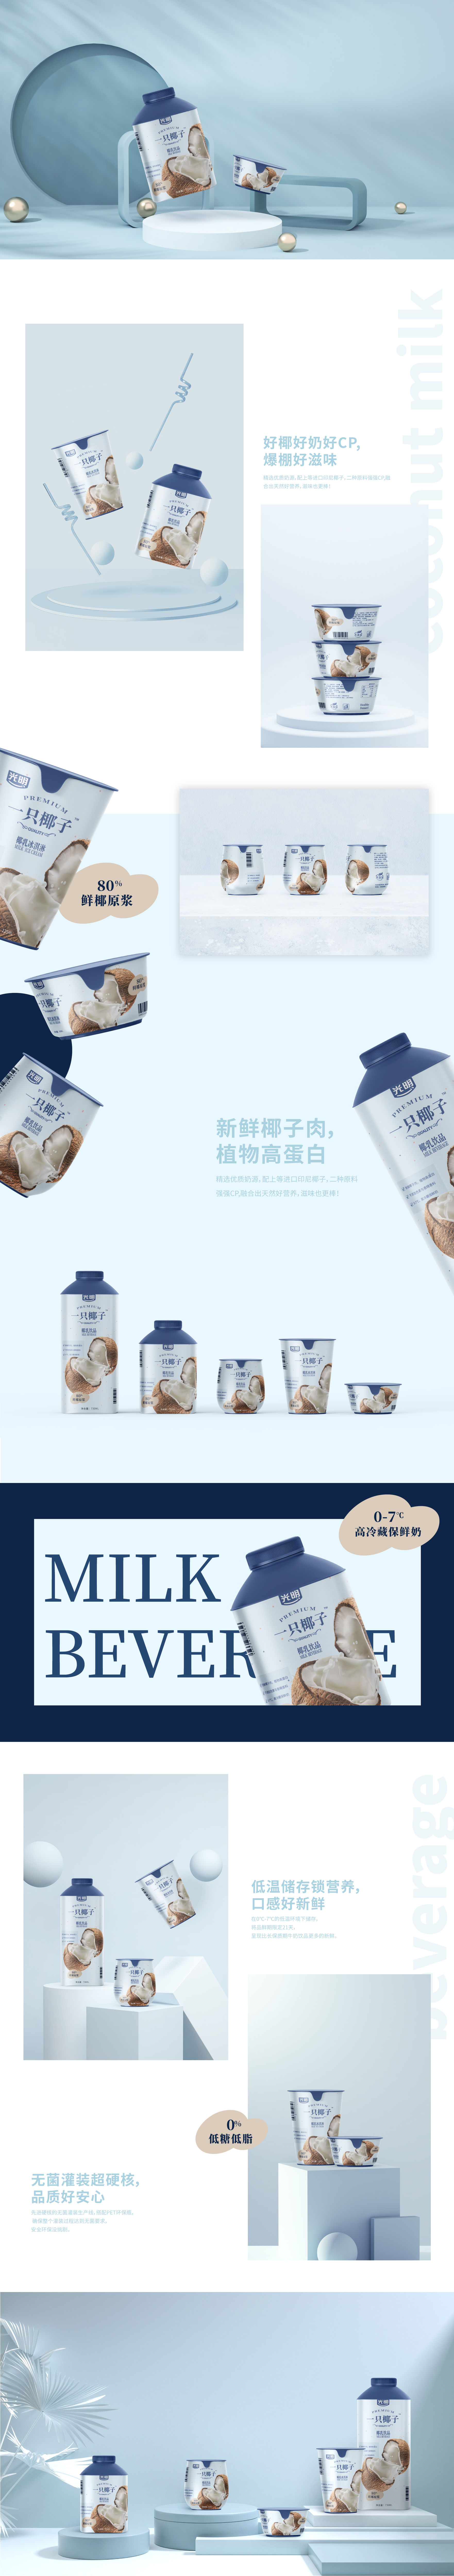 光明一只椰子-饮料包装设计-杭州品牌策划设计公司